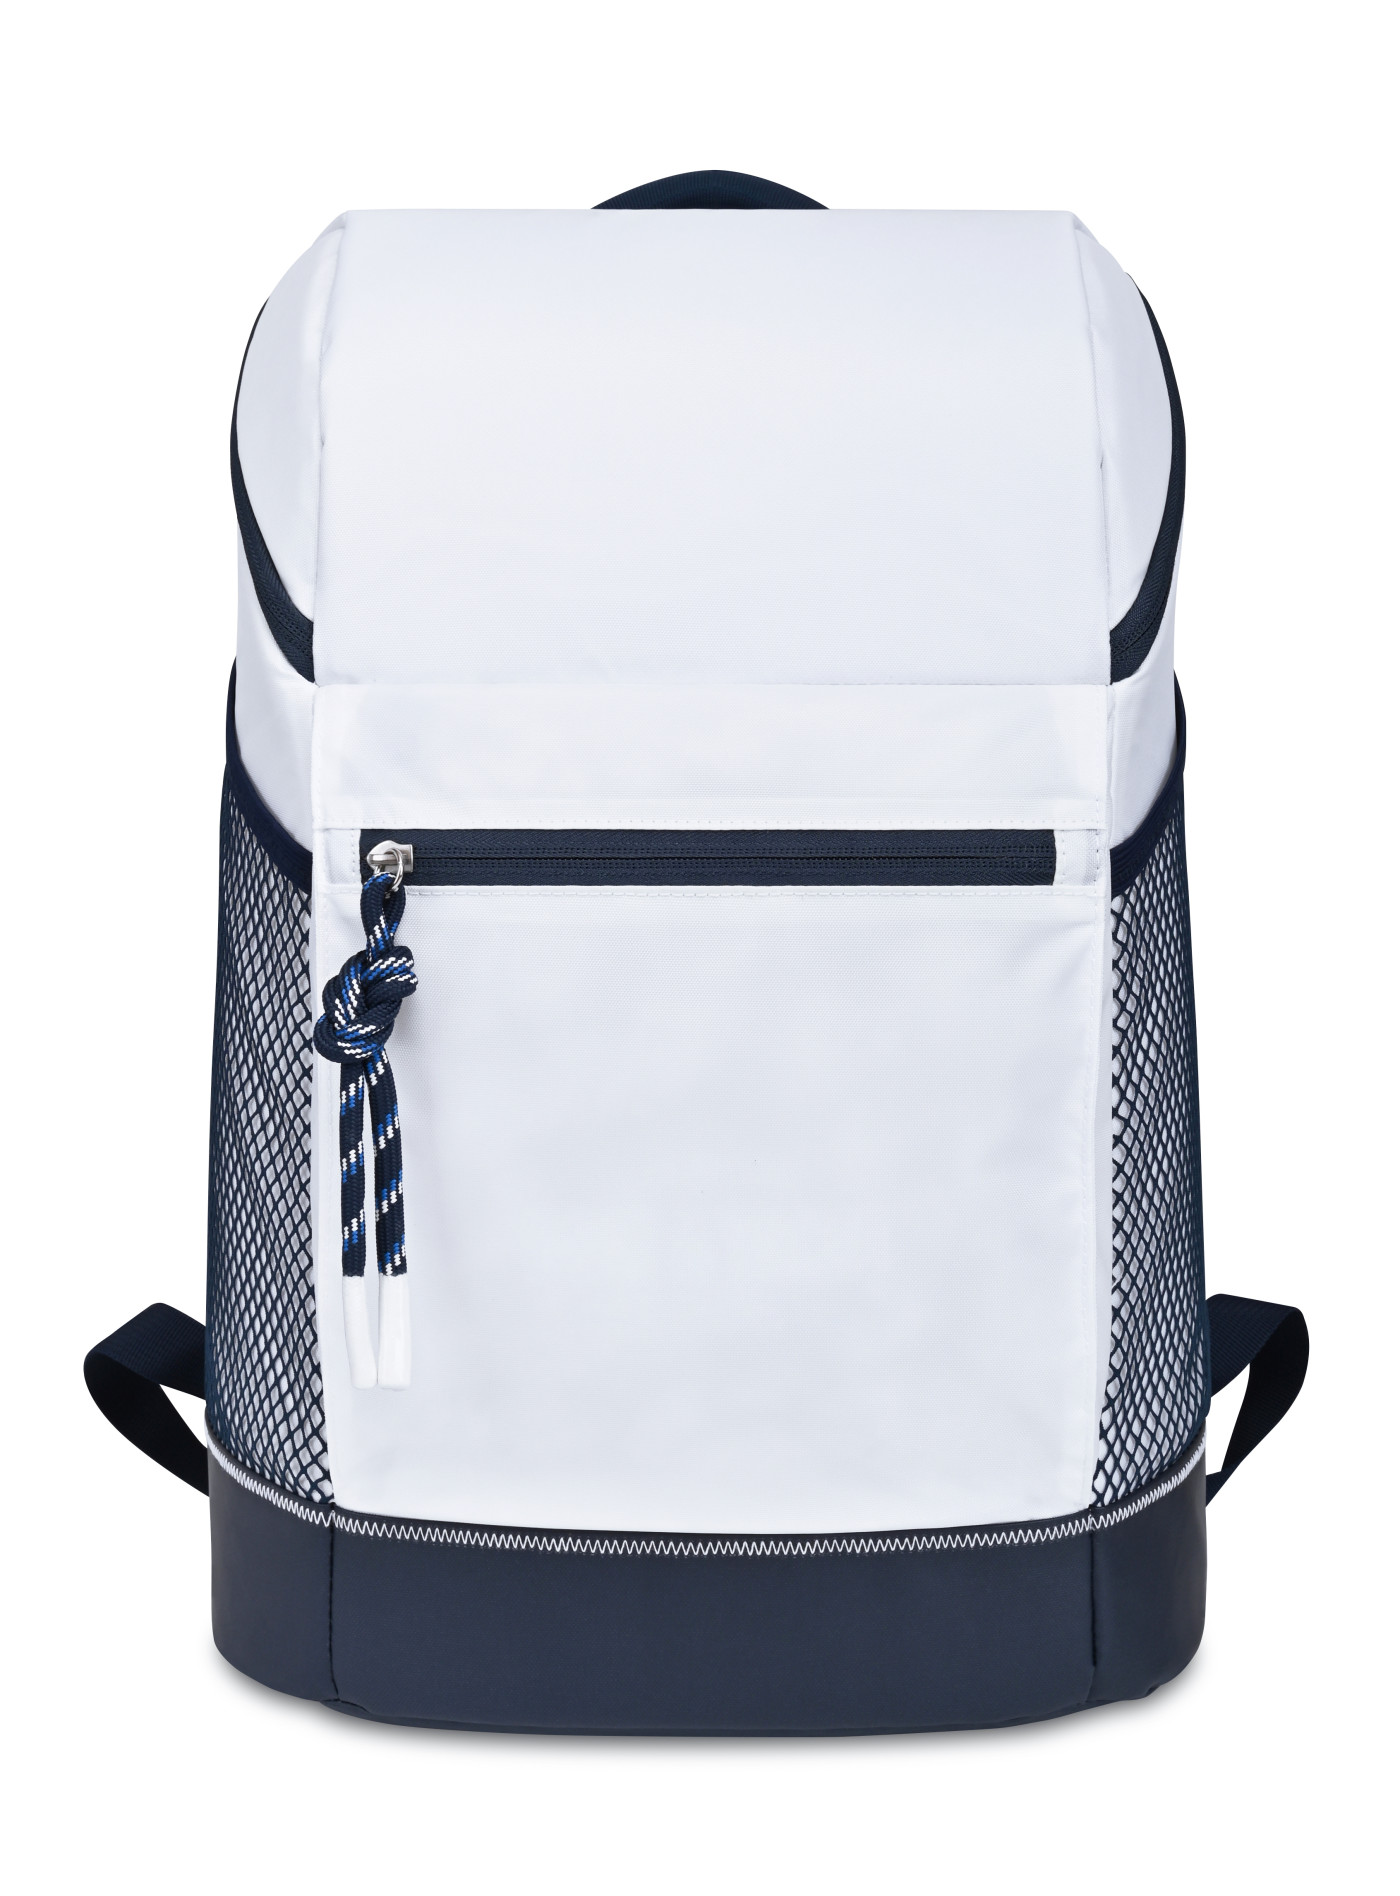 Gemline 101439 - Harborside Backpack Cooler